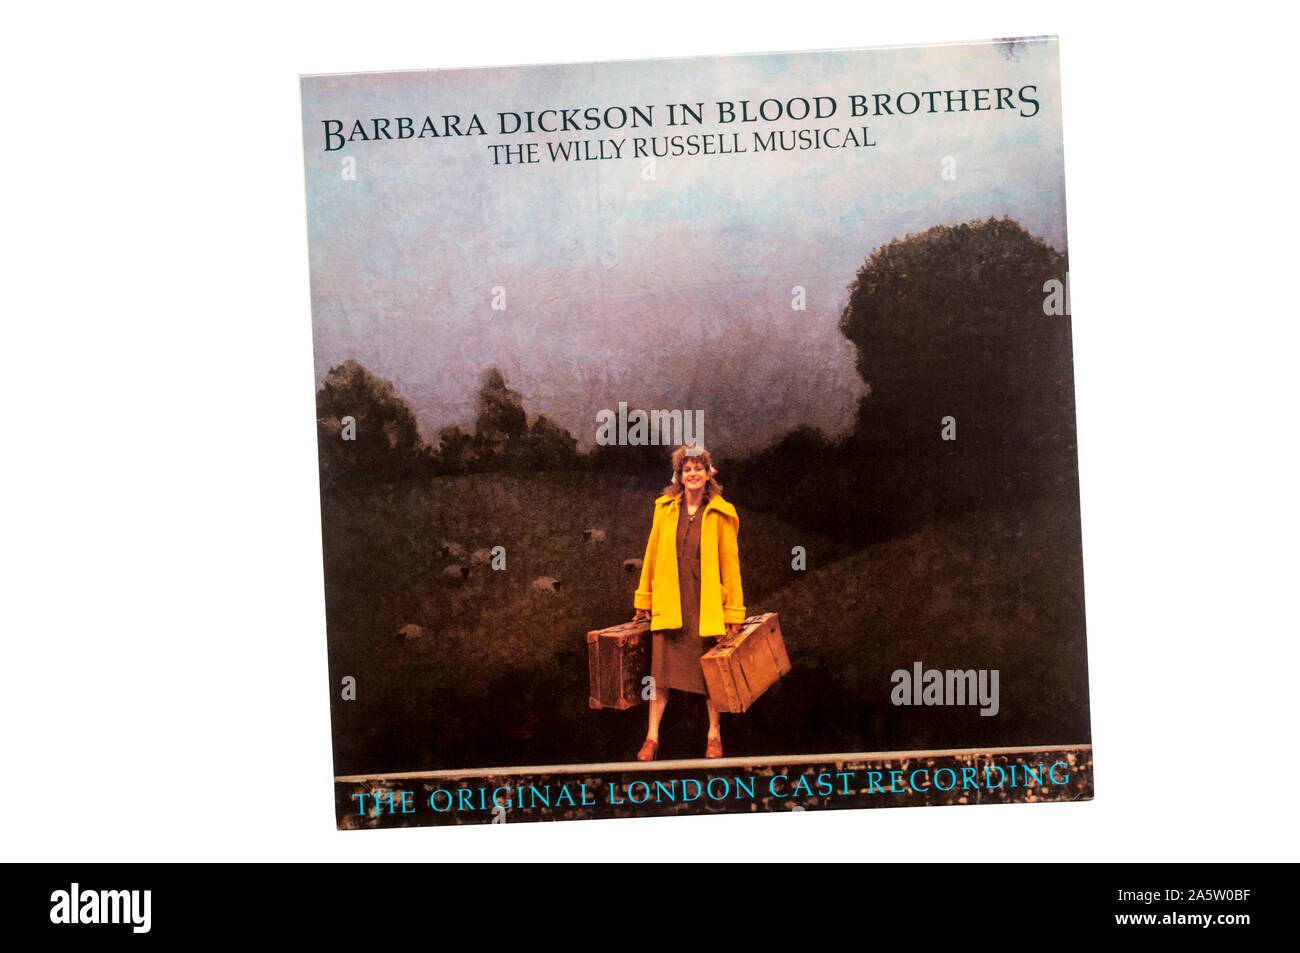 Original London Cast Recording von Barbara Dickson in Blood Brothers die Willy Russell Musical. Im Jahr 1983 veröffentlicht. Stockfoto